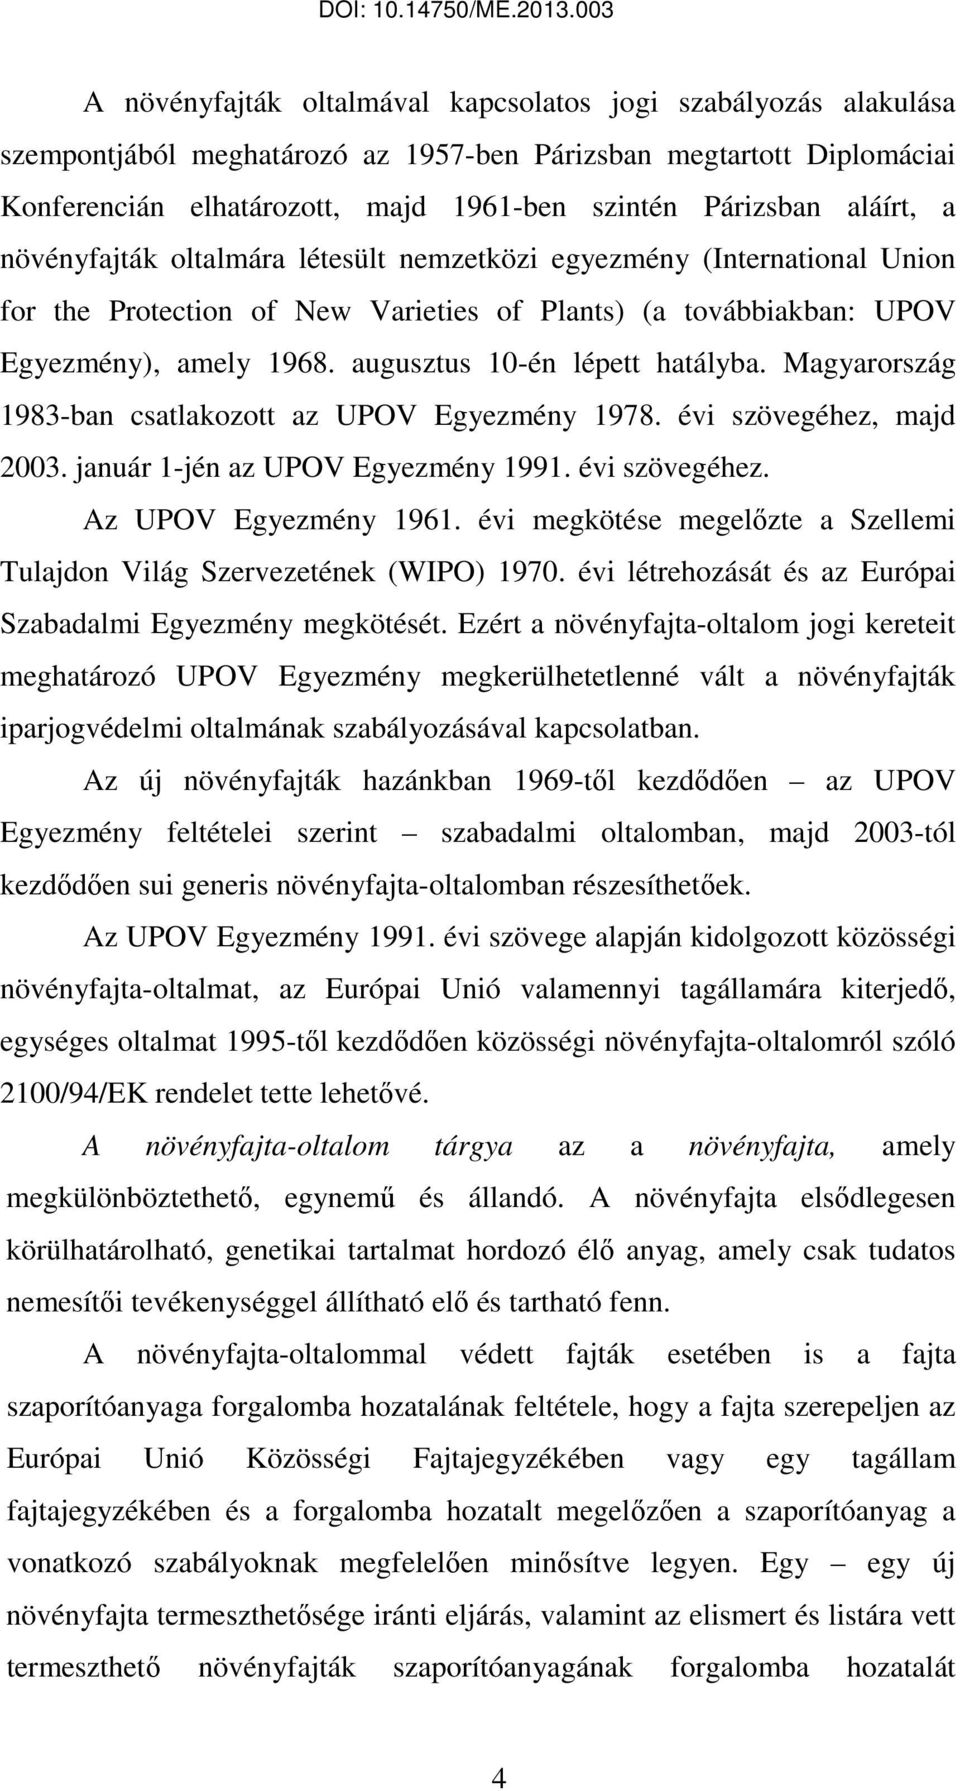 augusztus 10-én lépett hatályba. Magyarország 1983-ban csatlakozott az UPOV Egyezmény 1978. évi szövegéhez, majd 2003. január 1-jén az UPOV Egyezmény 1991. évi szövegéhez. Az UPOV Egyezmény 1961.